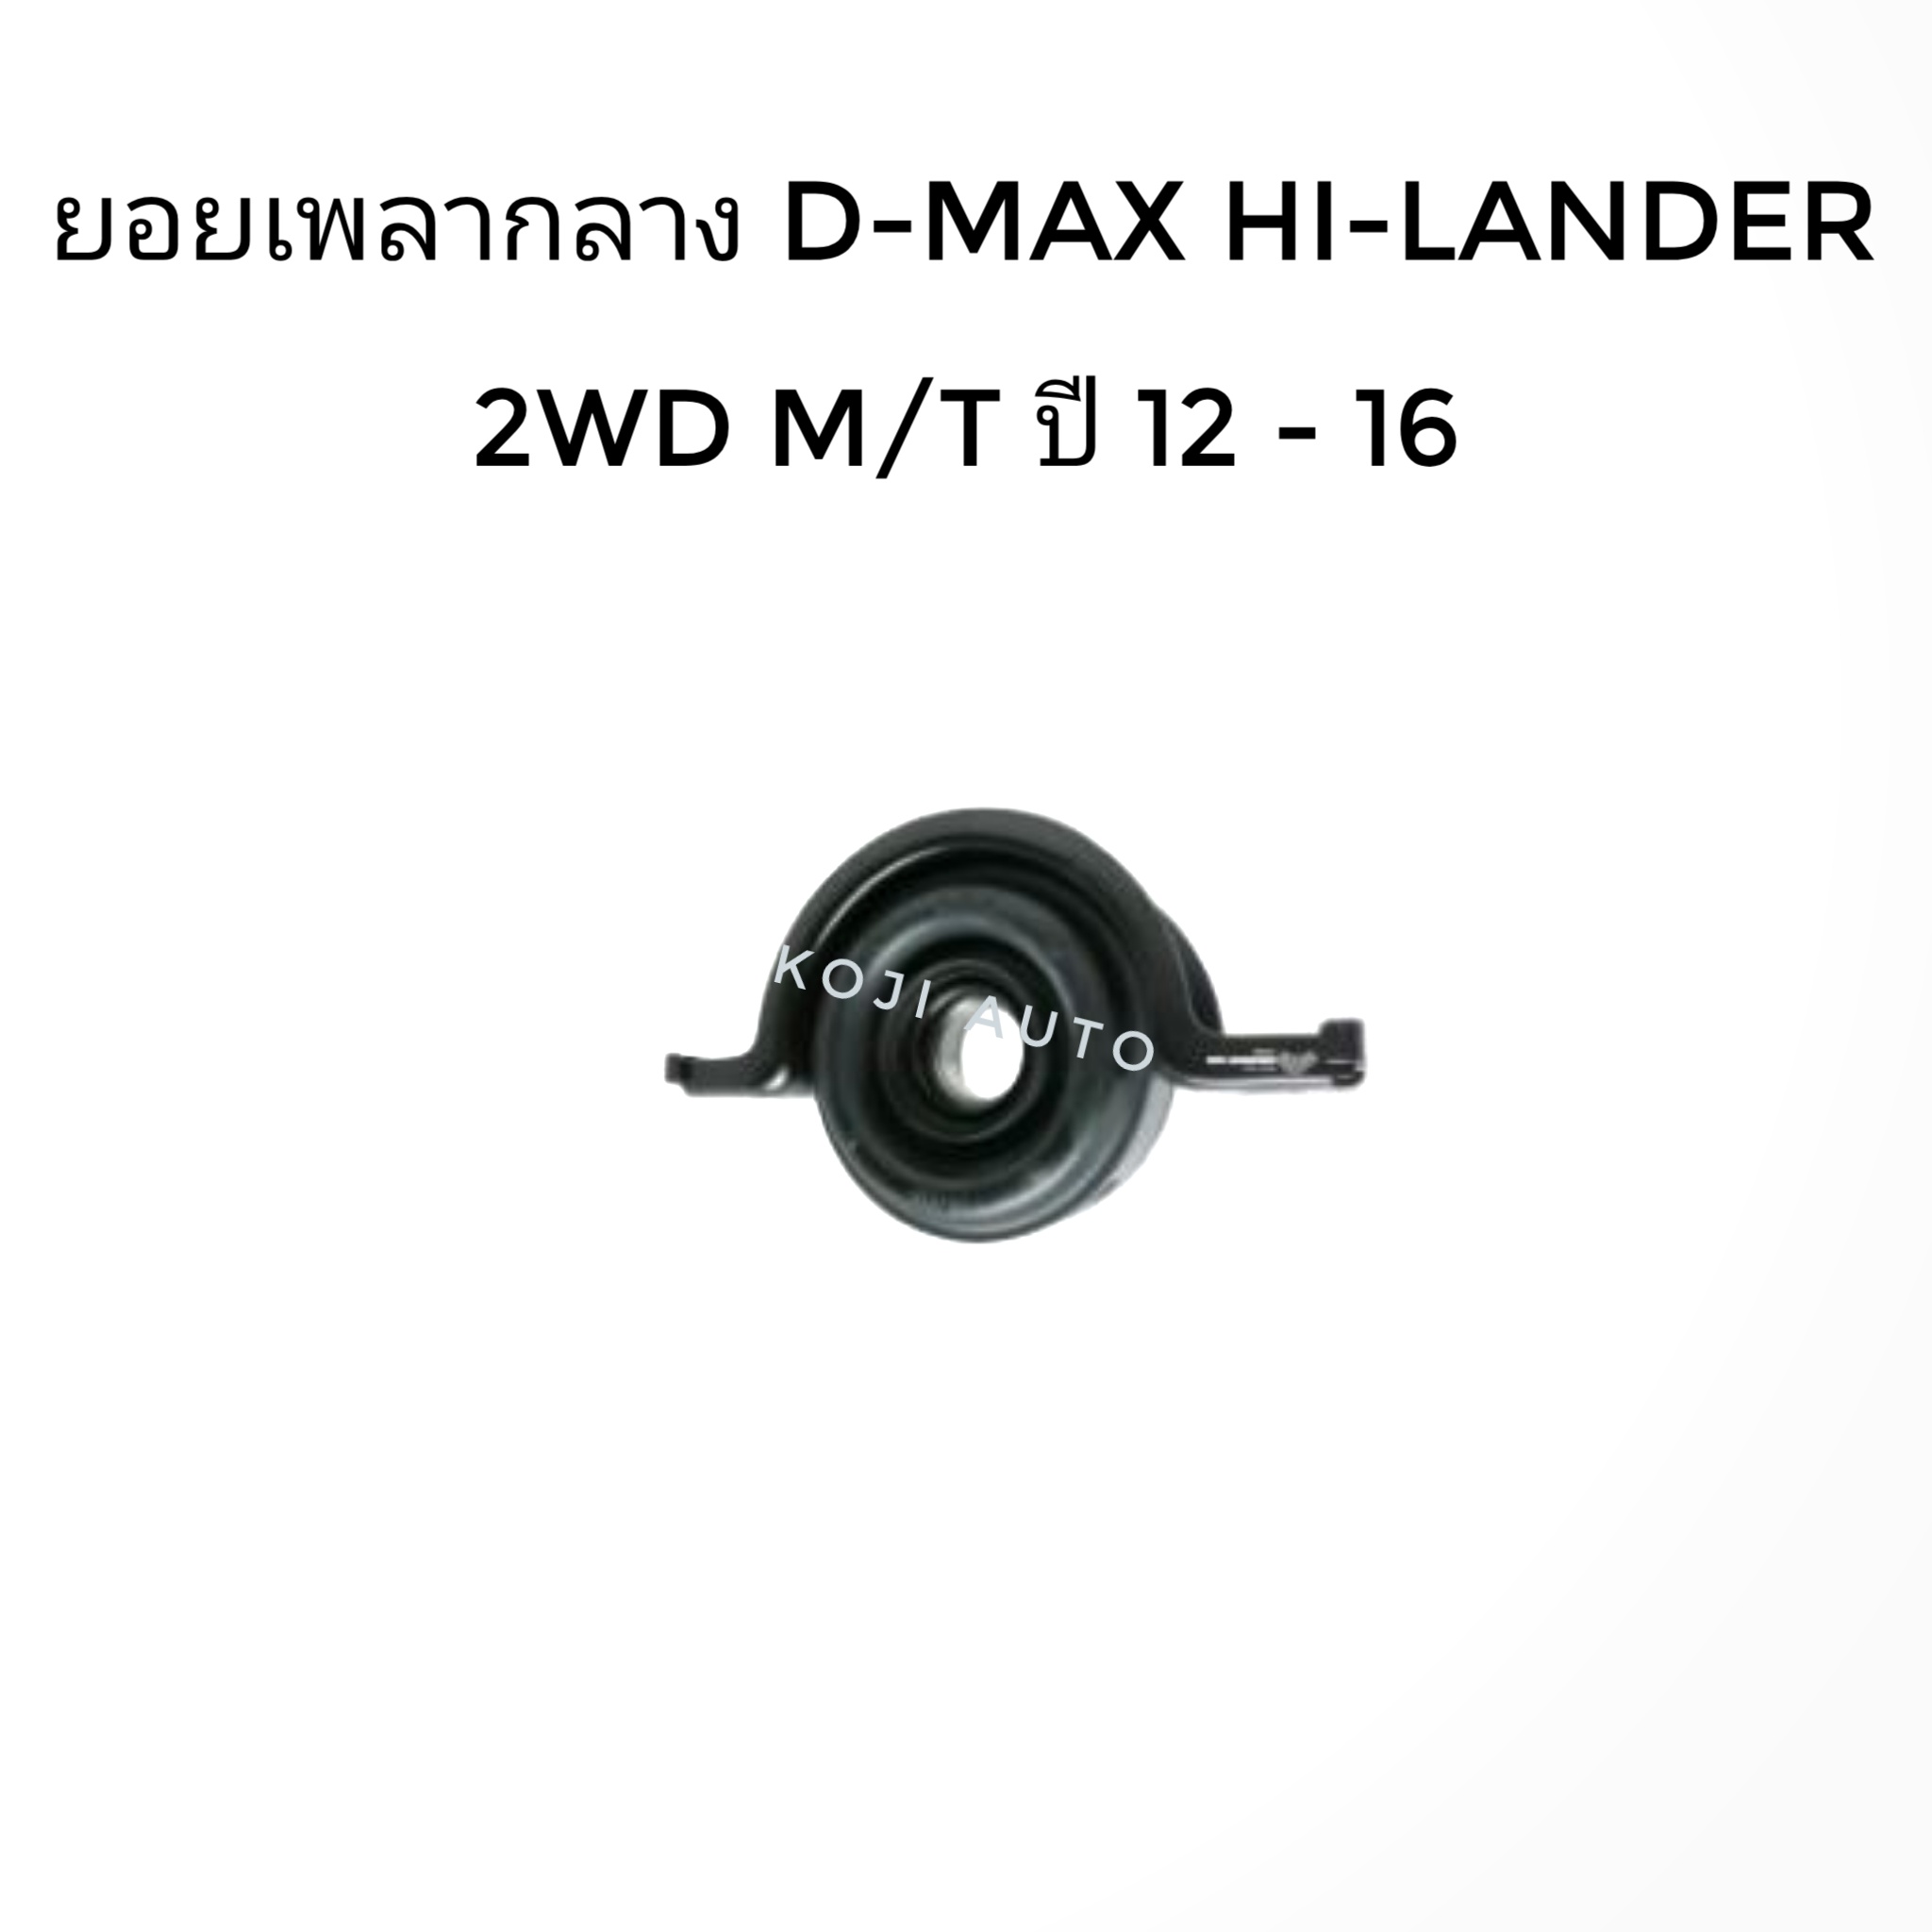 ยางเพลากลาง อีซูซุ  ดีแมกซ์ ไฮแลนด์เดอร์ Isuzu D-MAX HI-LANDER 2WD ( ยกสูง ) เกียร์ธรรมดา ปี 2012 - 2016 (1 ตัว)